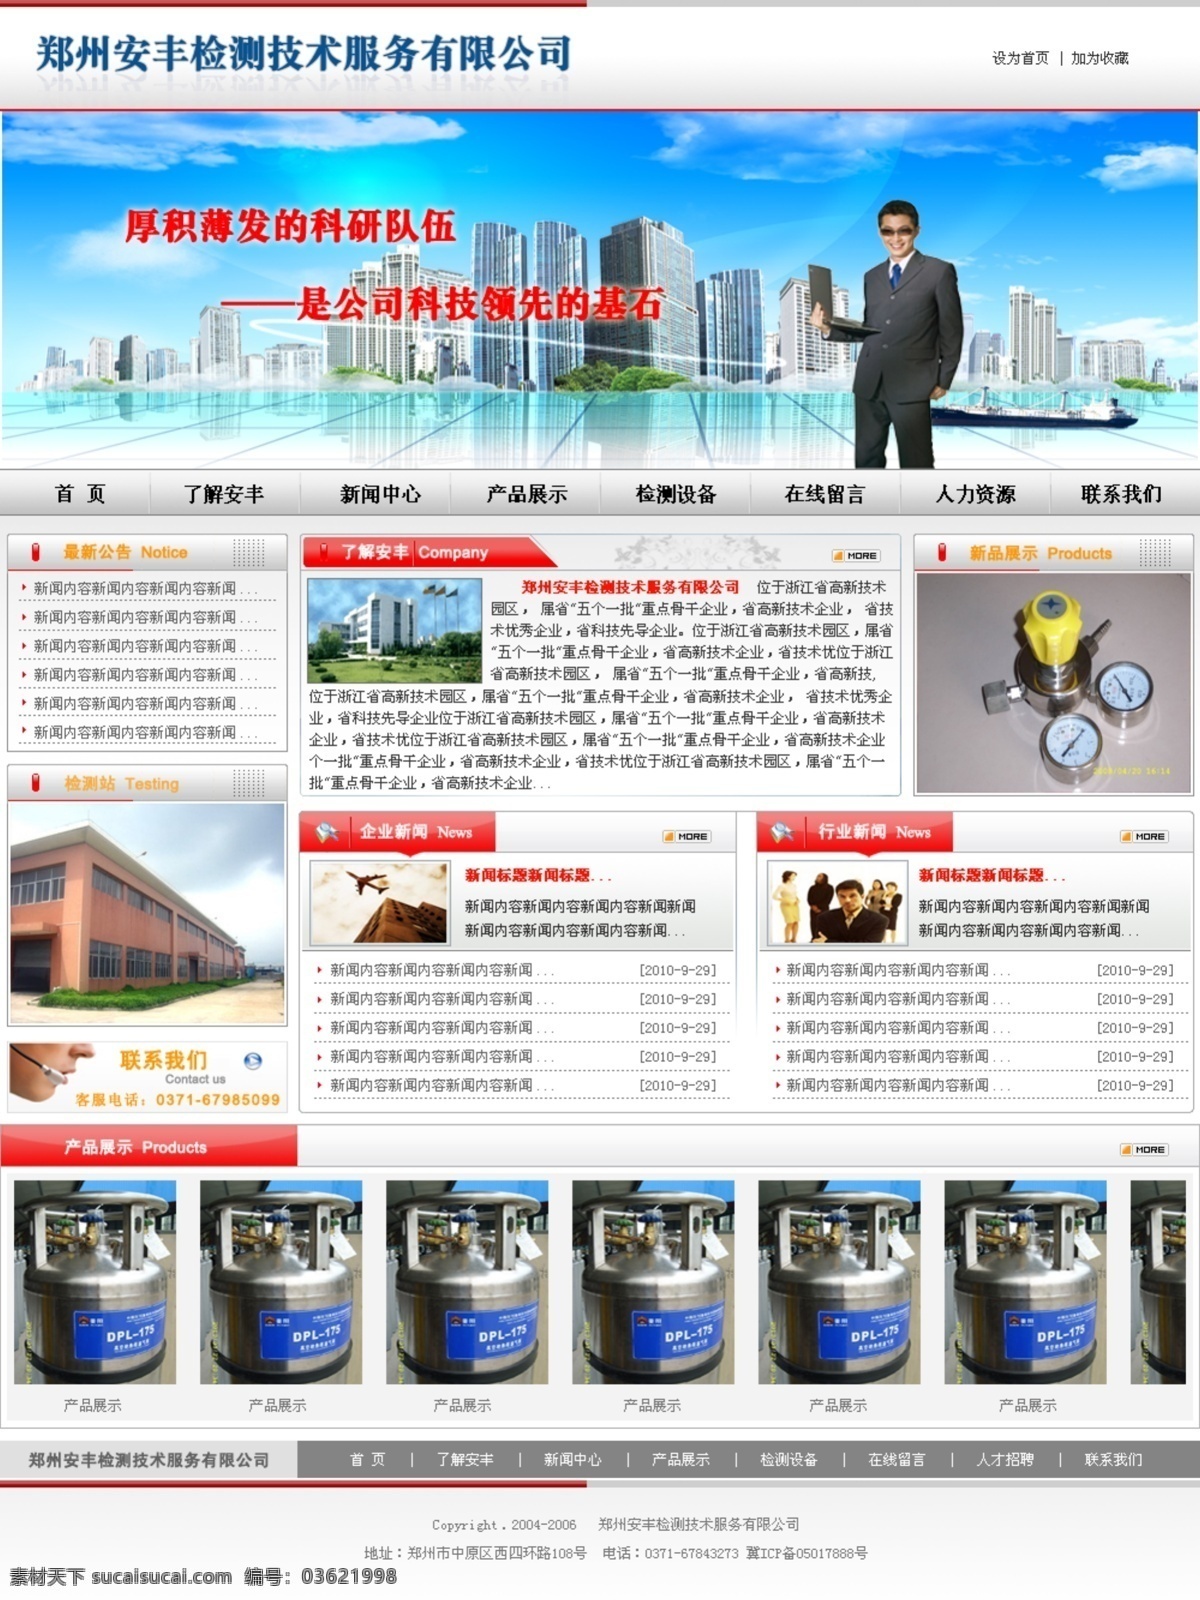 检测技术 网页设计 产品 公司 检测 网页模板 网站 源文件 中文模版 网页素材